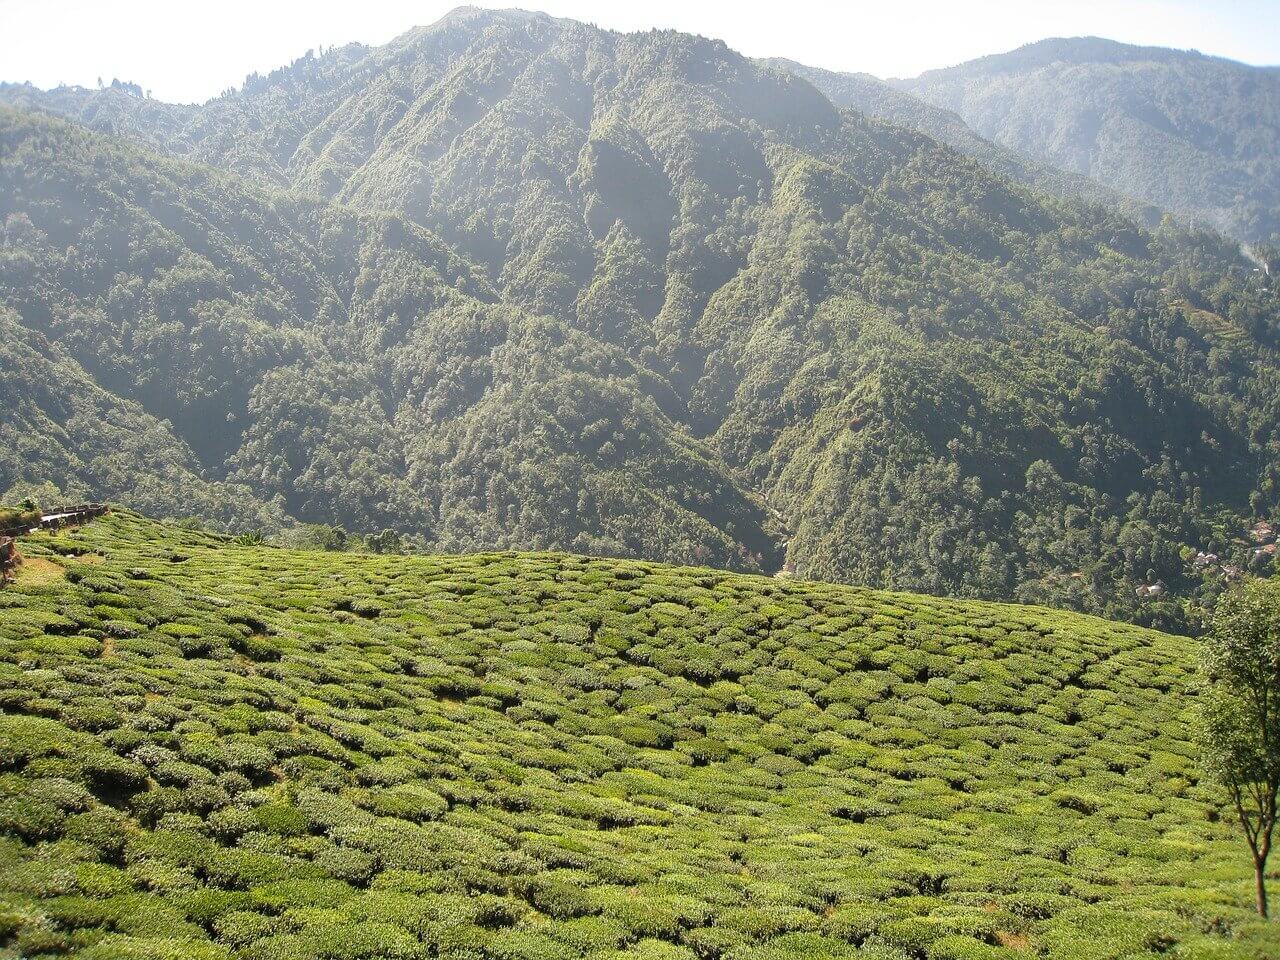 History of tea industry in the Darjeeling hills